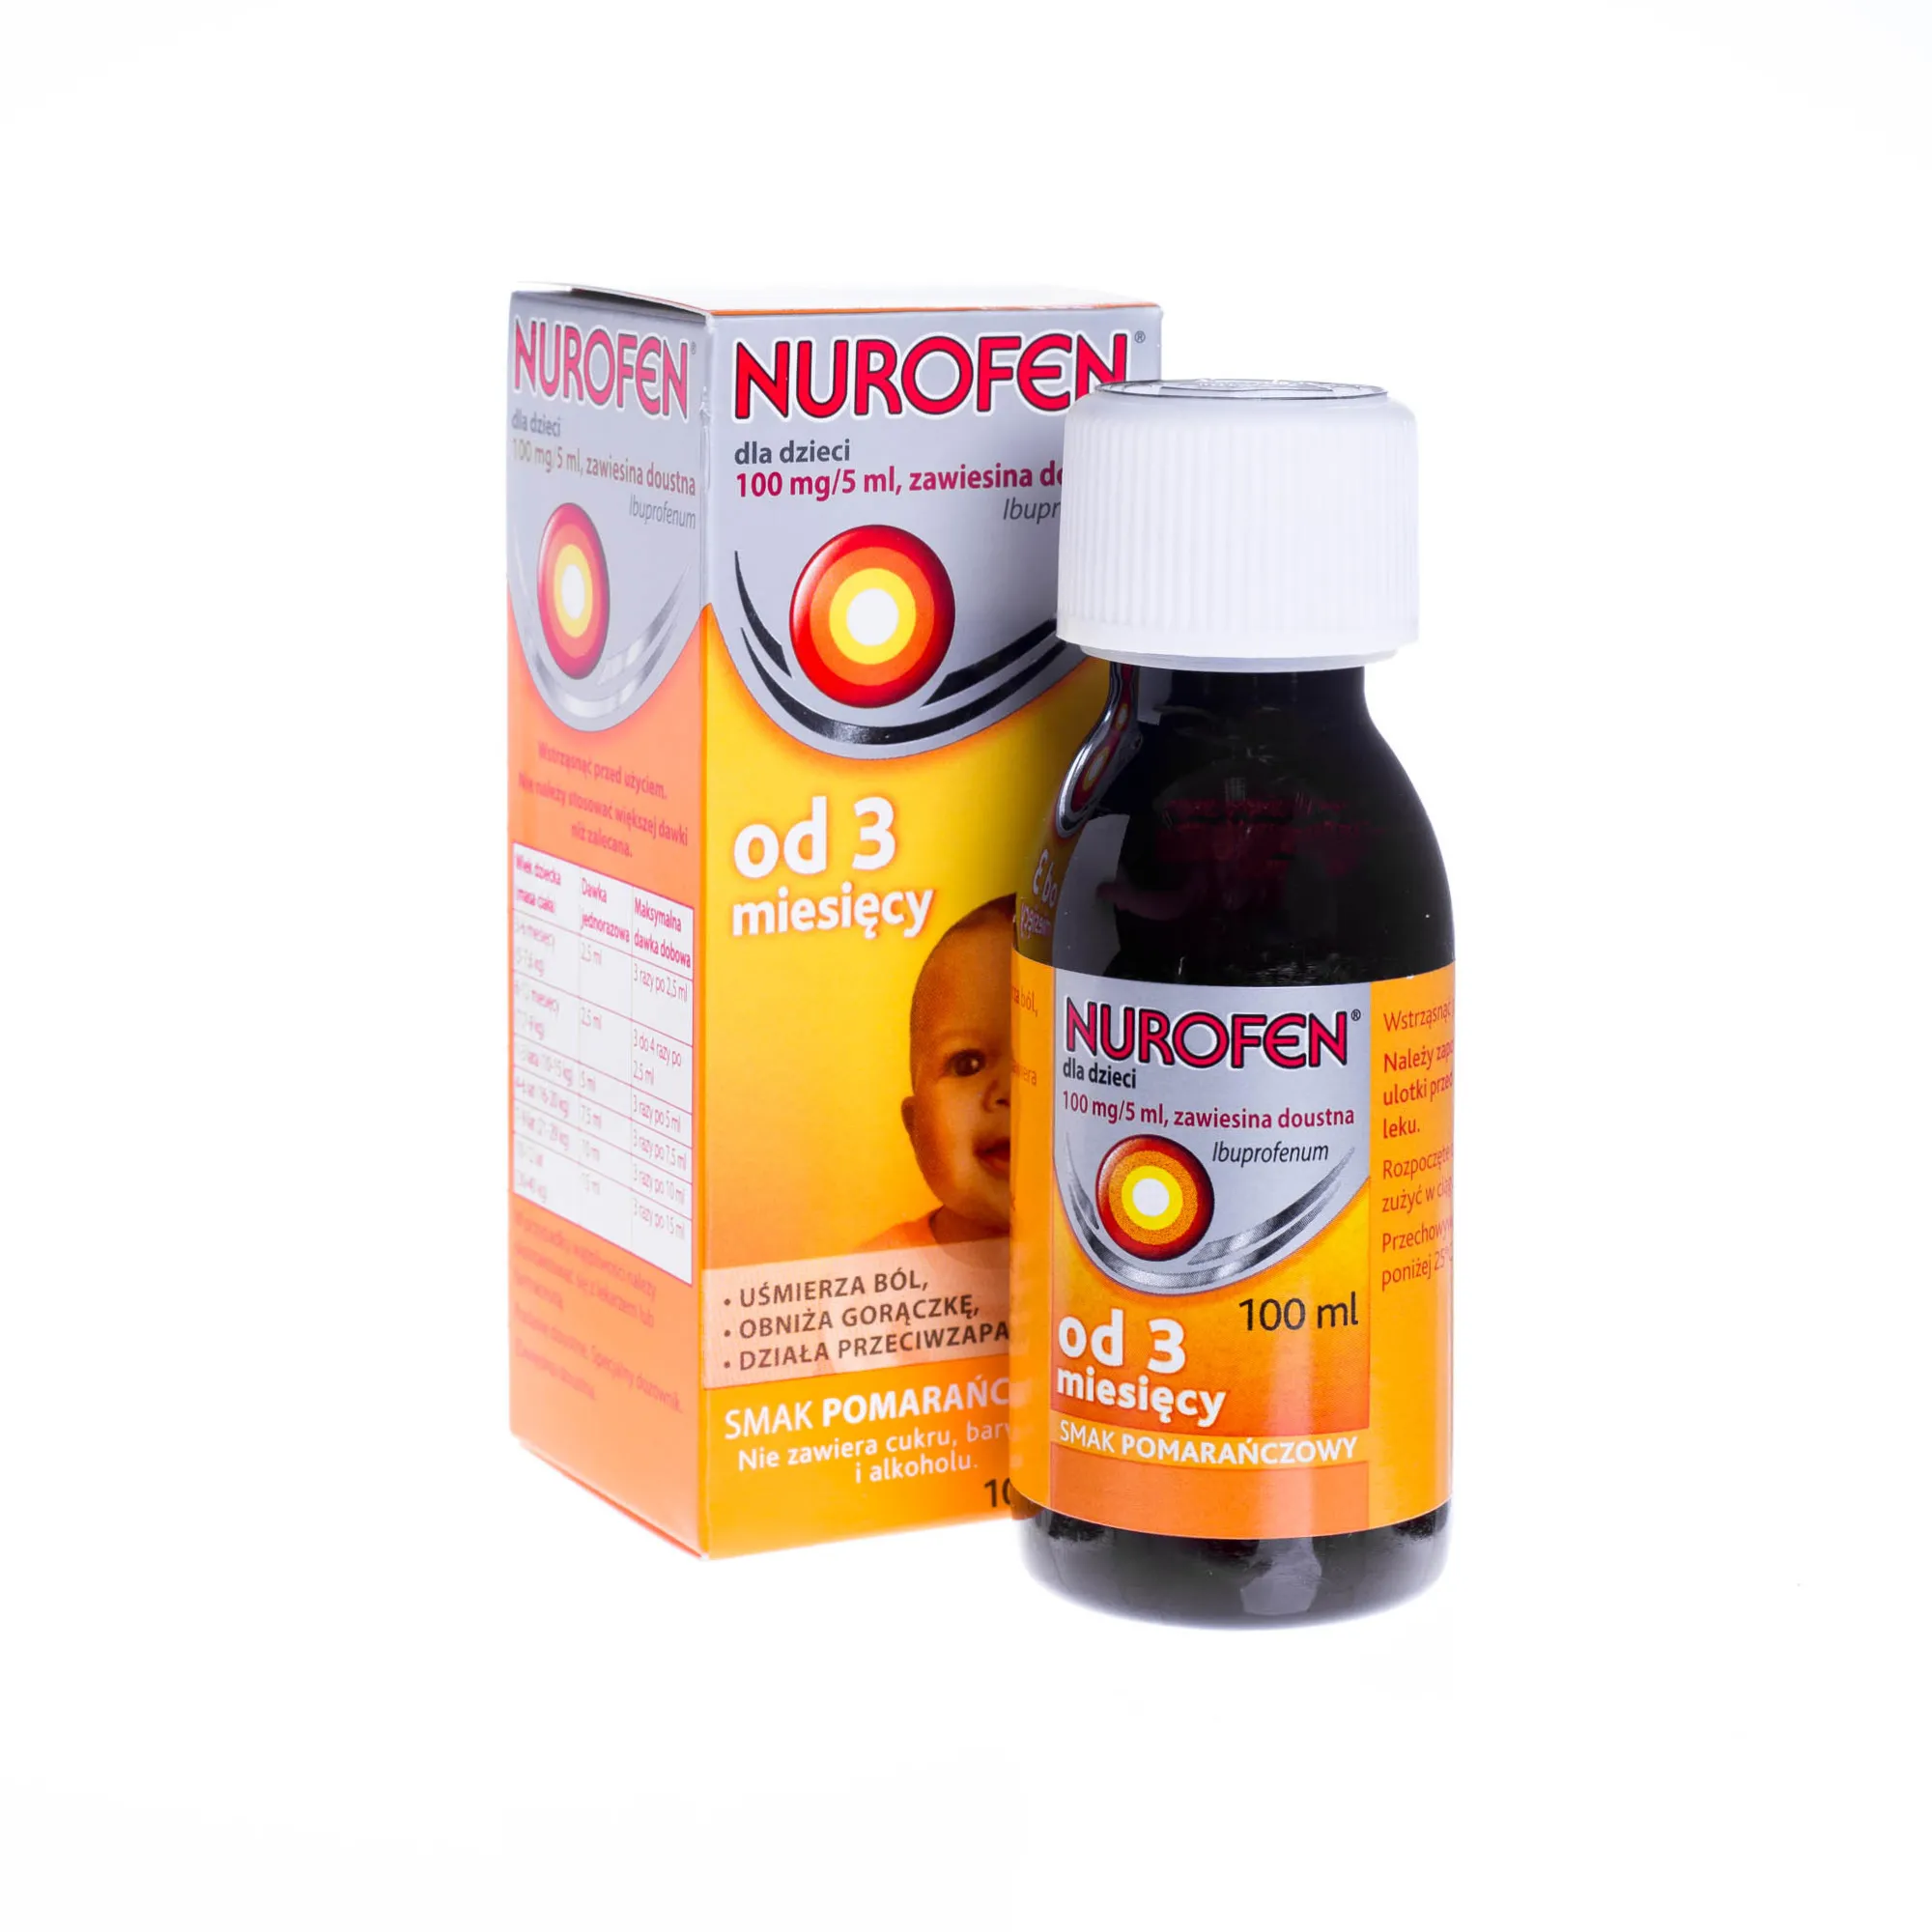 Nurofen 100 mg/5 ml, zawiesina doustna od 3 miesięcy, smak pomarańczowy, 100 ml